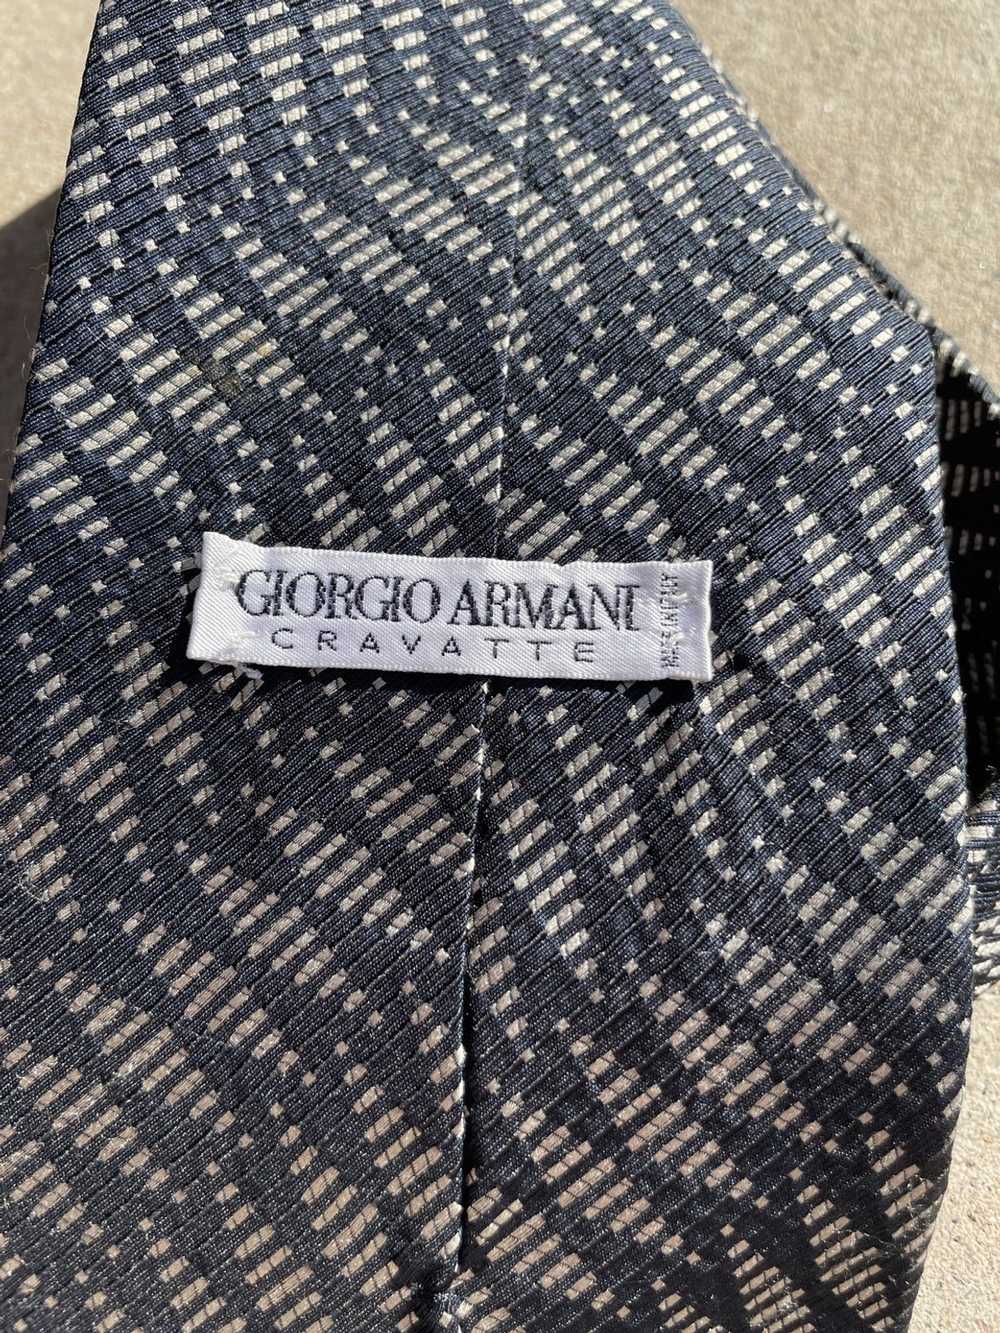 Giorgio Armani Giorgio Armani cravatte silk neck … - image 4